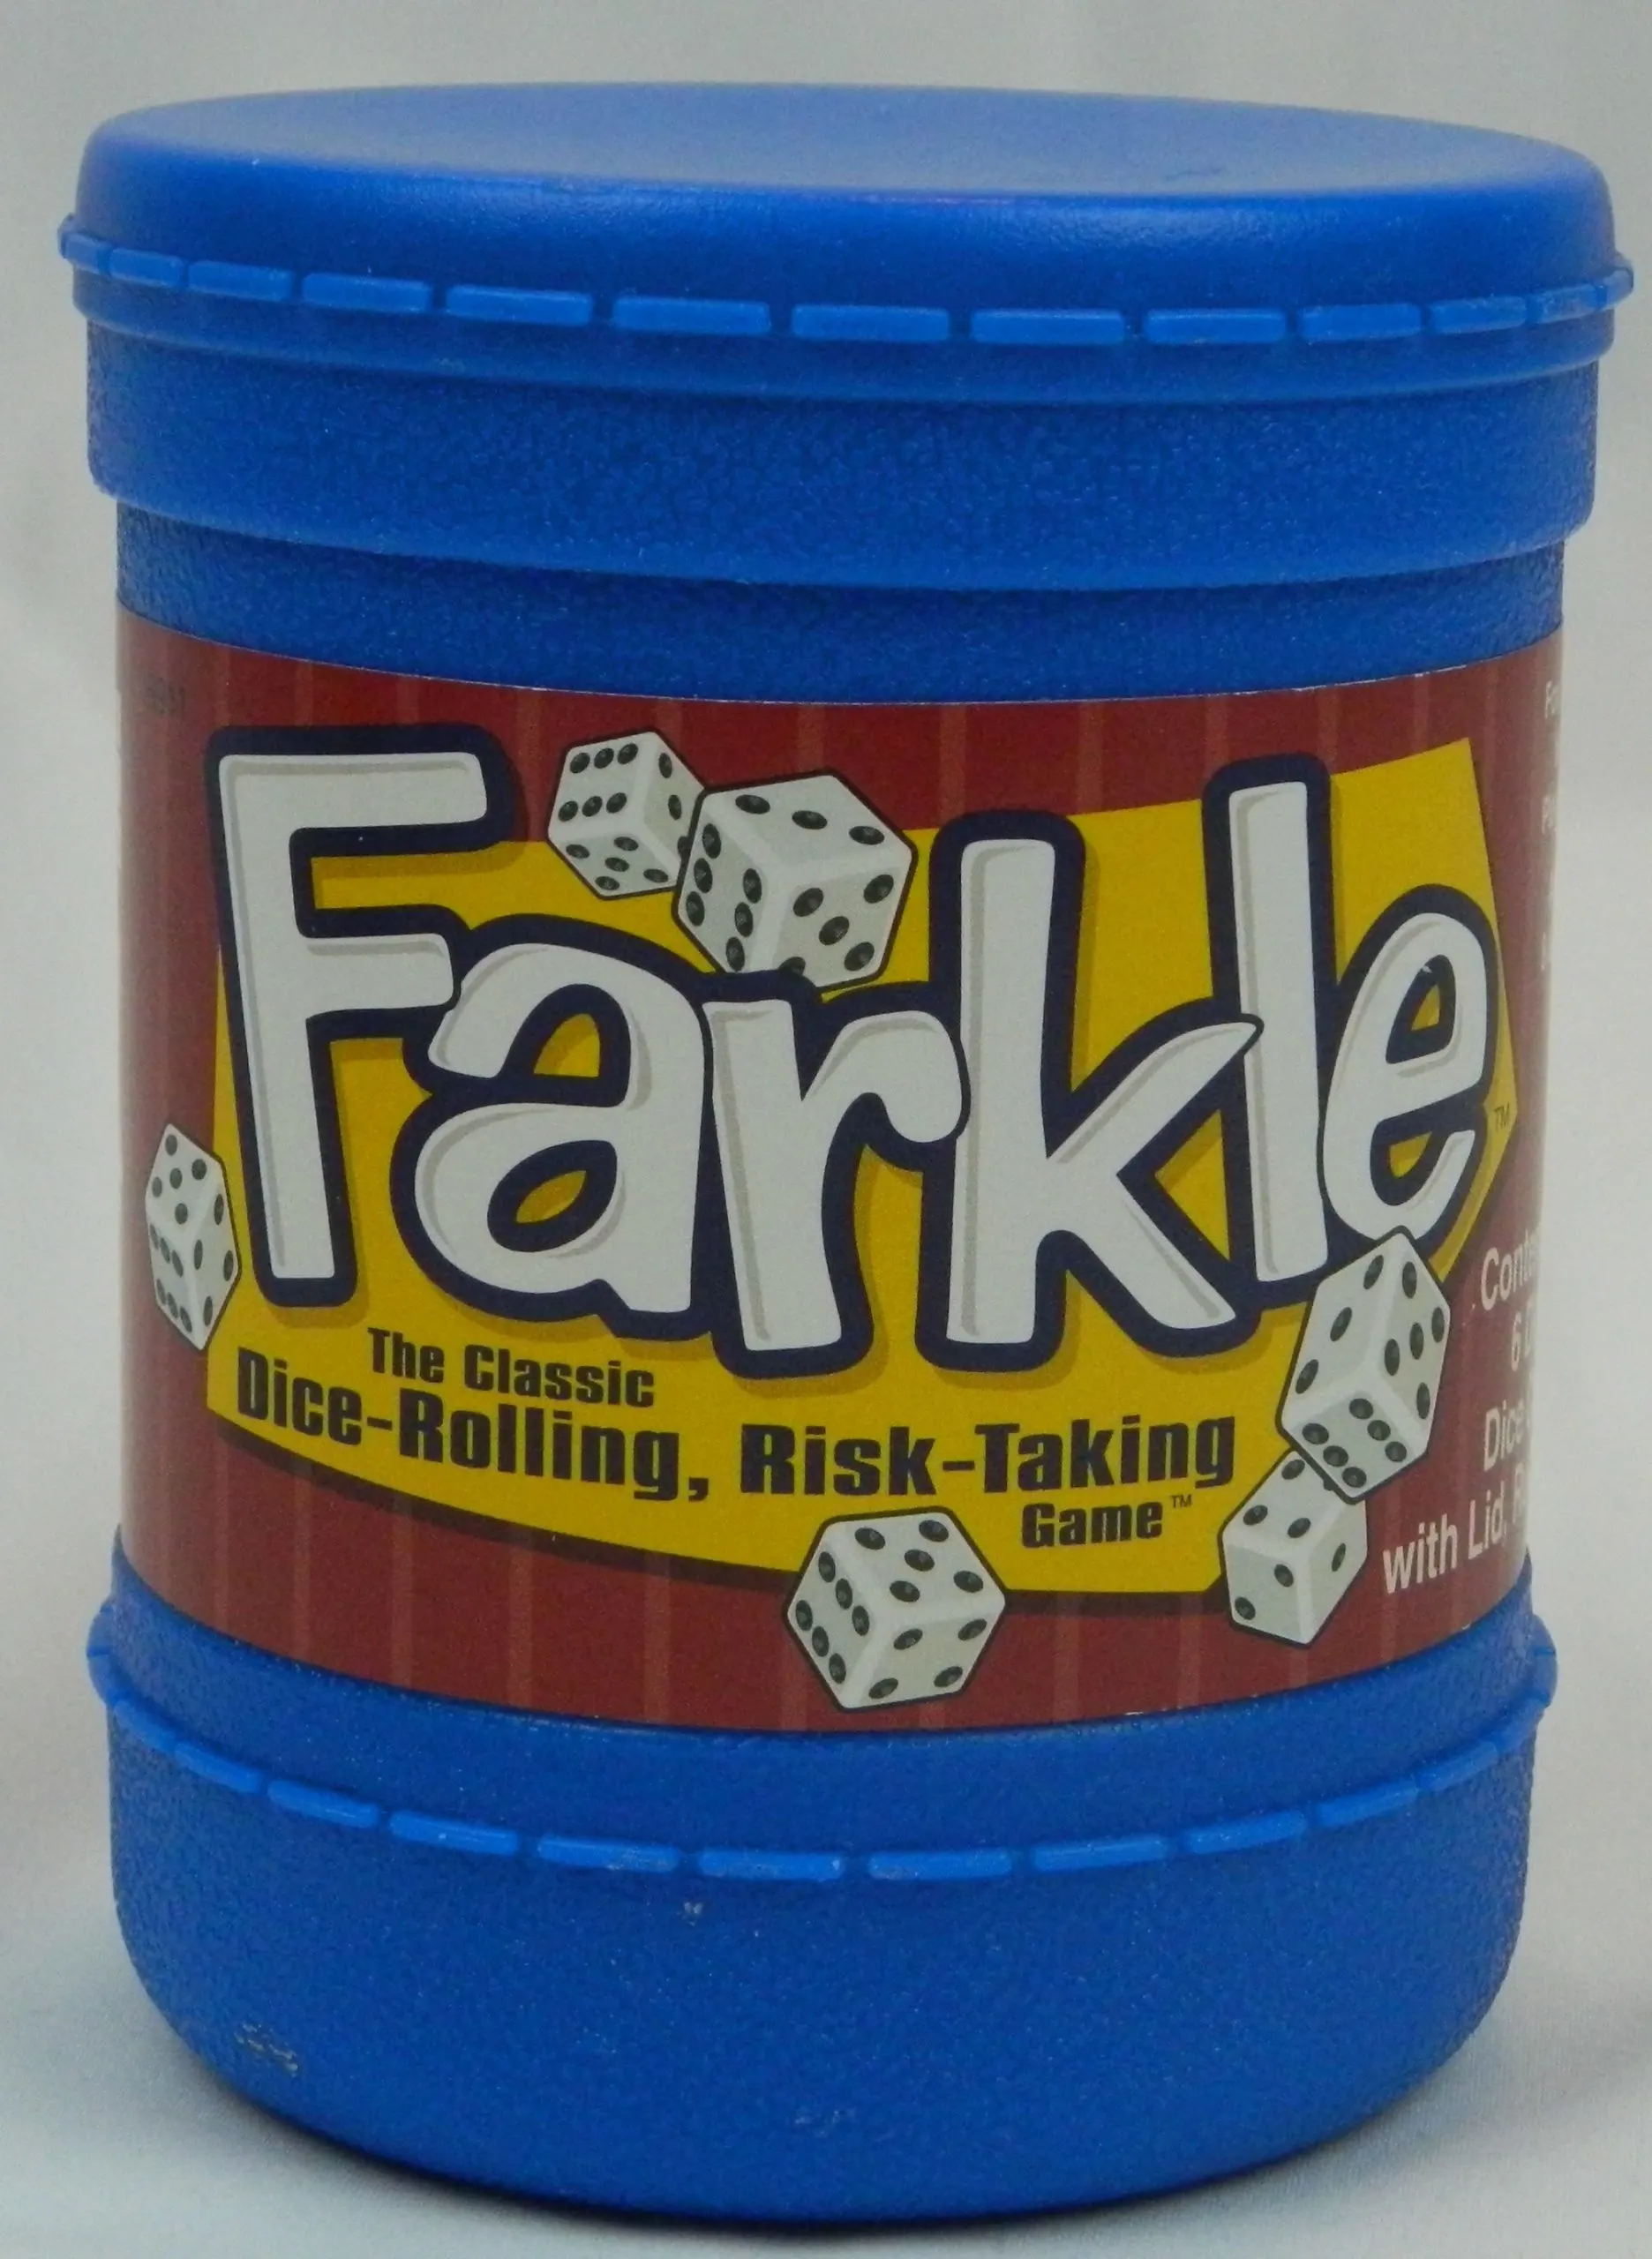 Box for Farkle